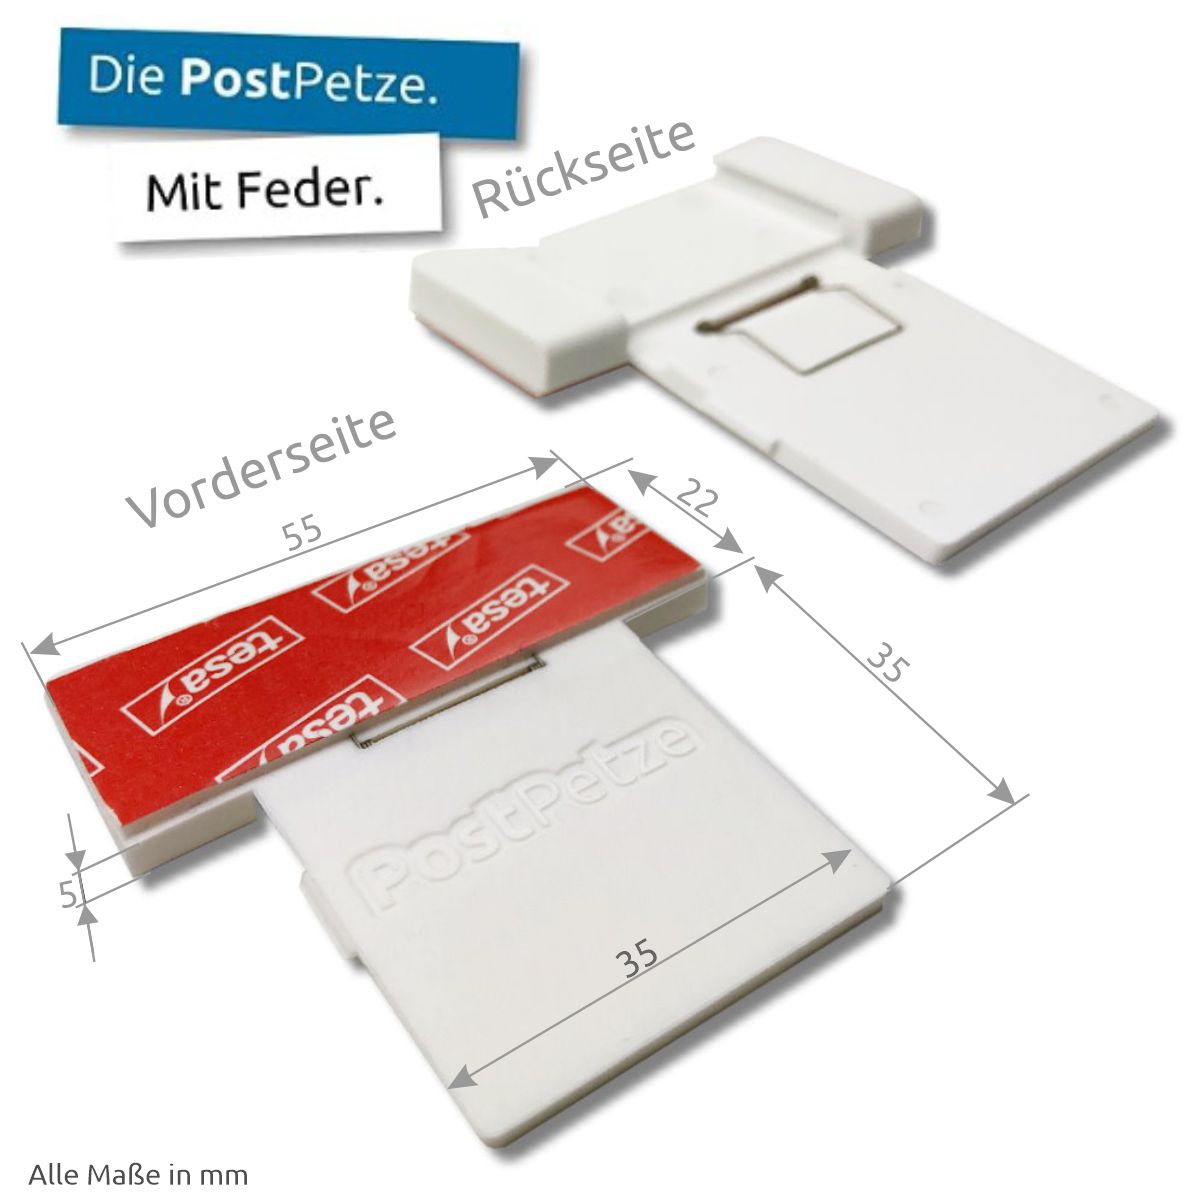 PostPetze | Dein Postmelder | Weiss